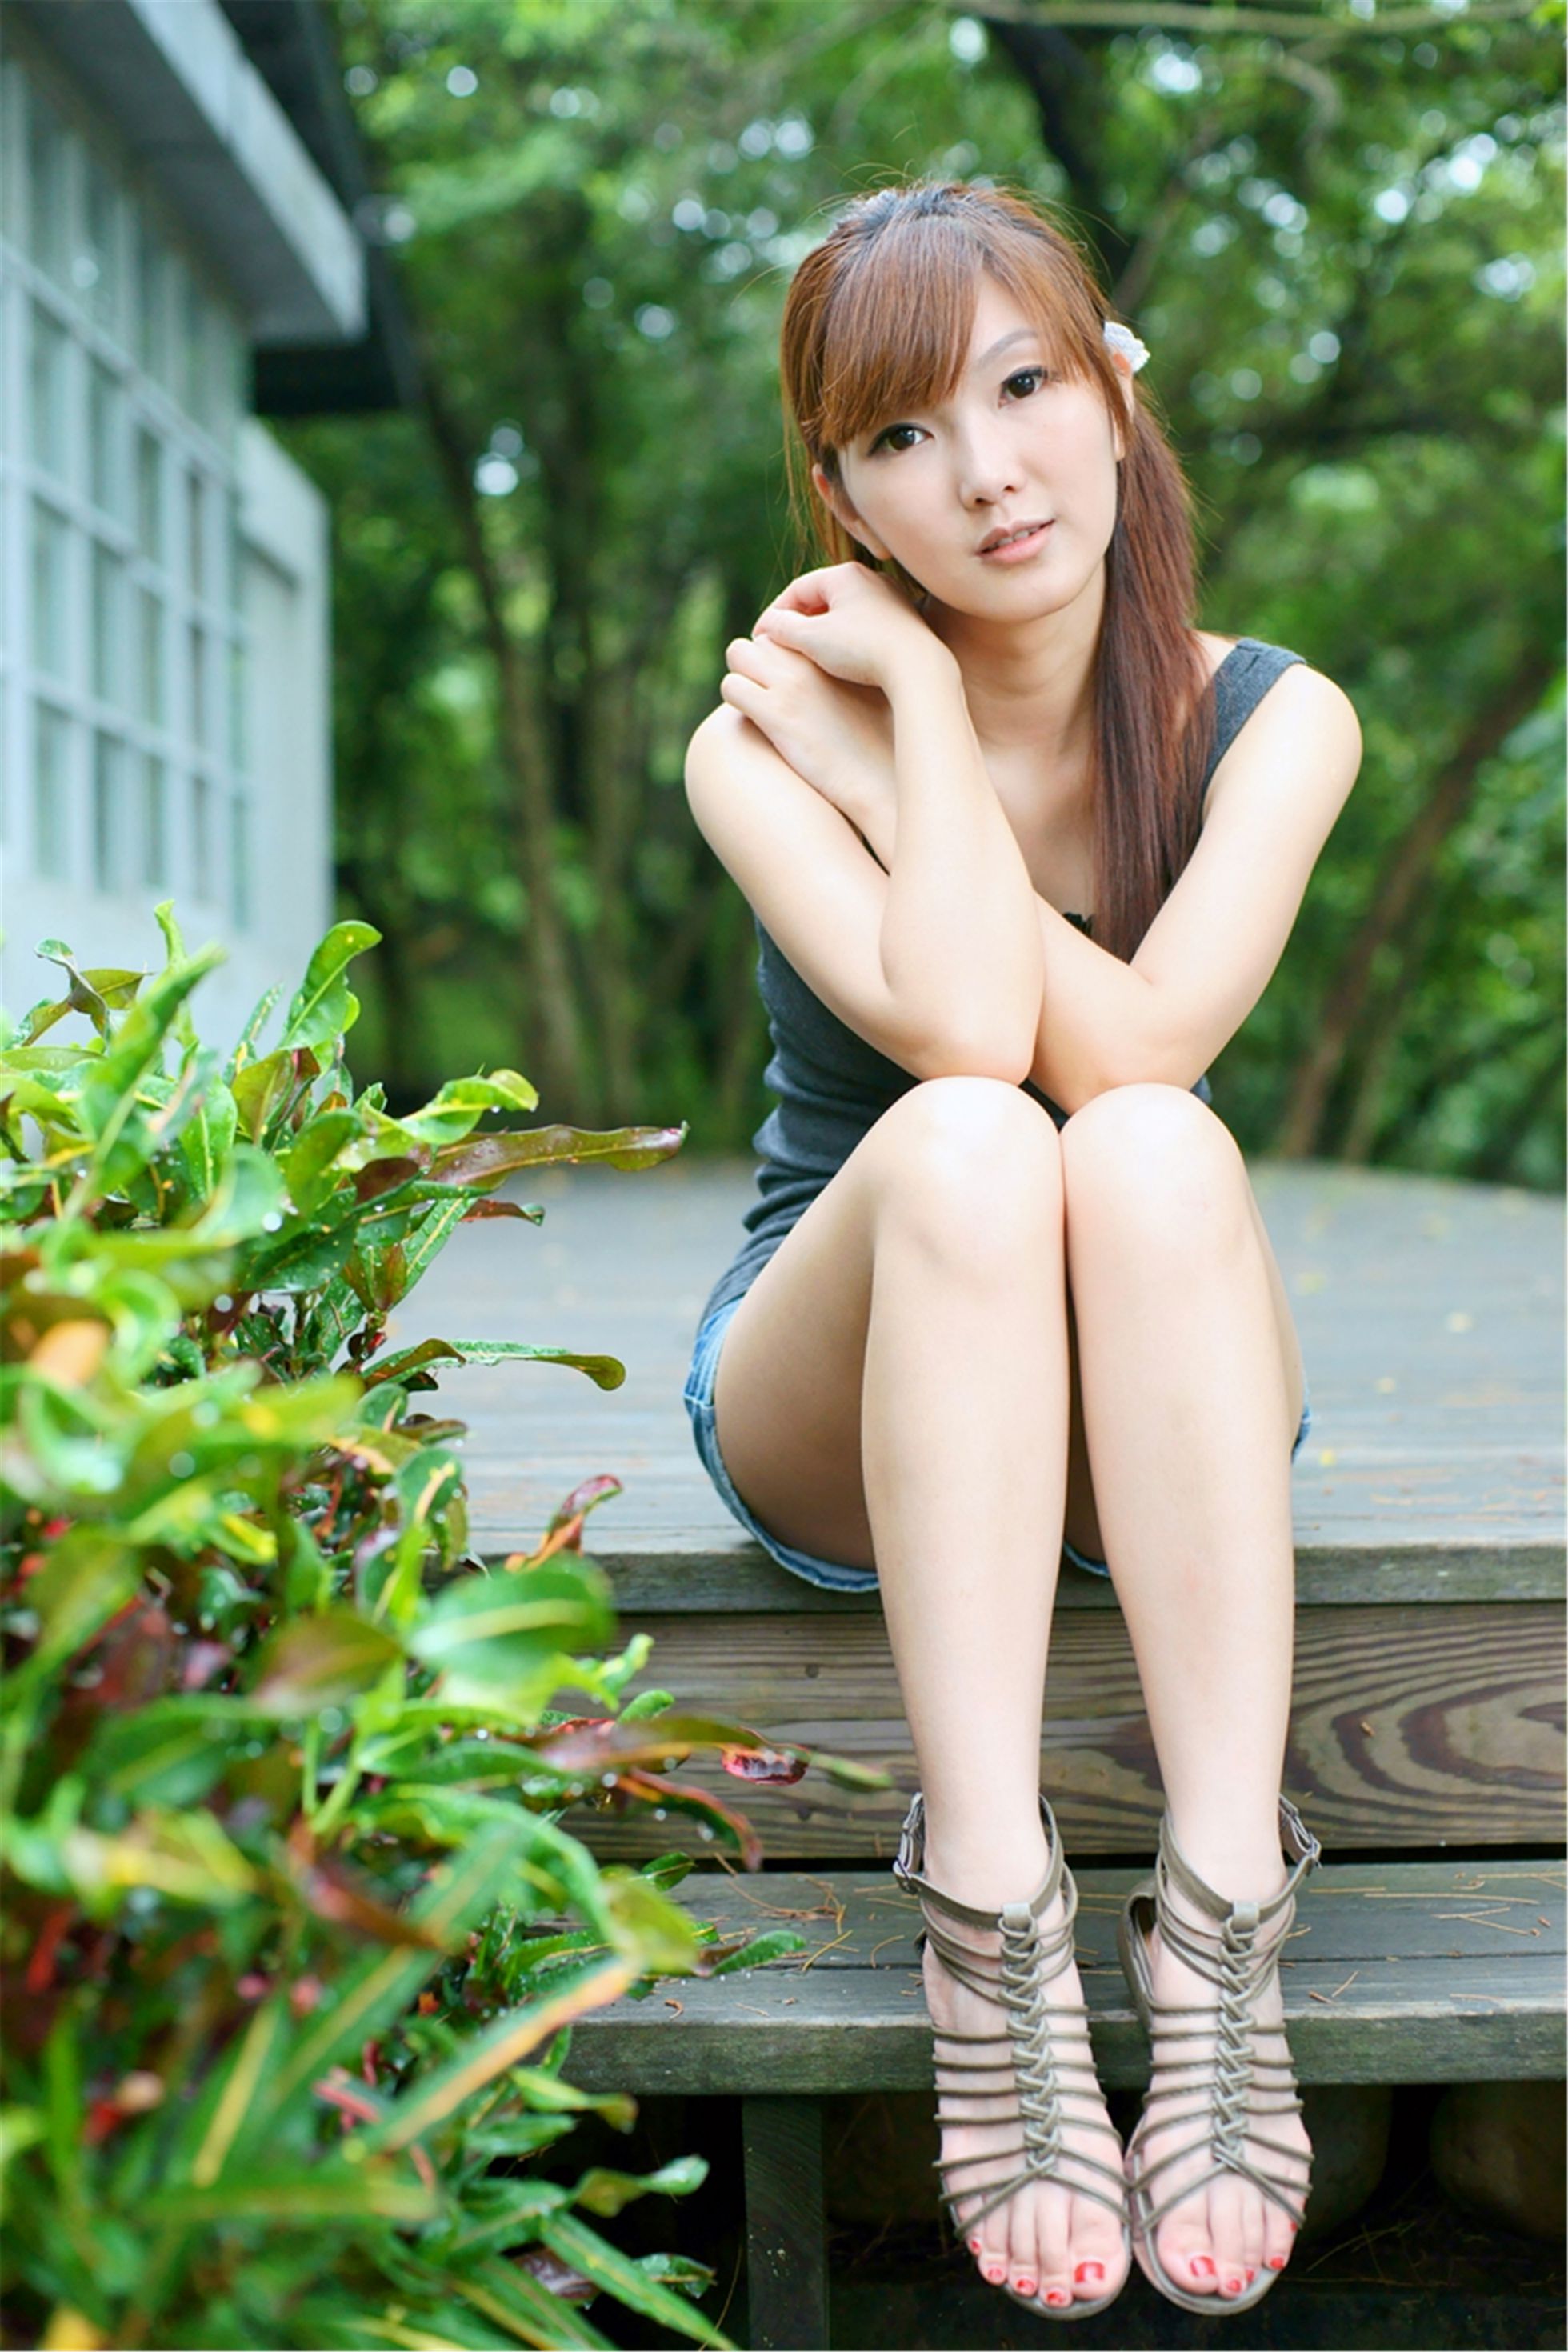 [台湾美女] 模特Sammi - 绿意盎然 唯美写真集